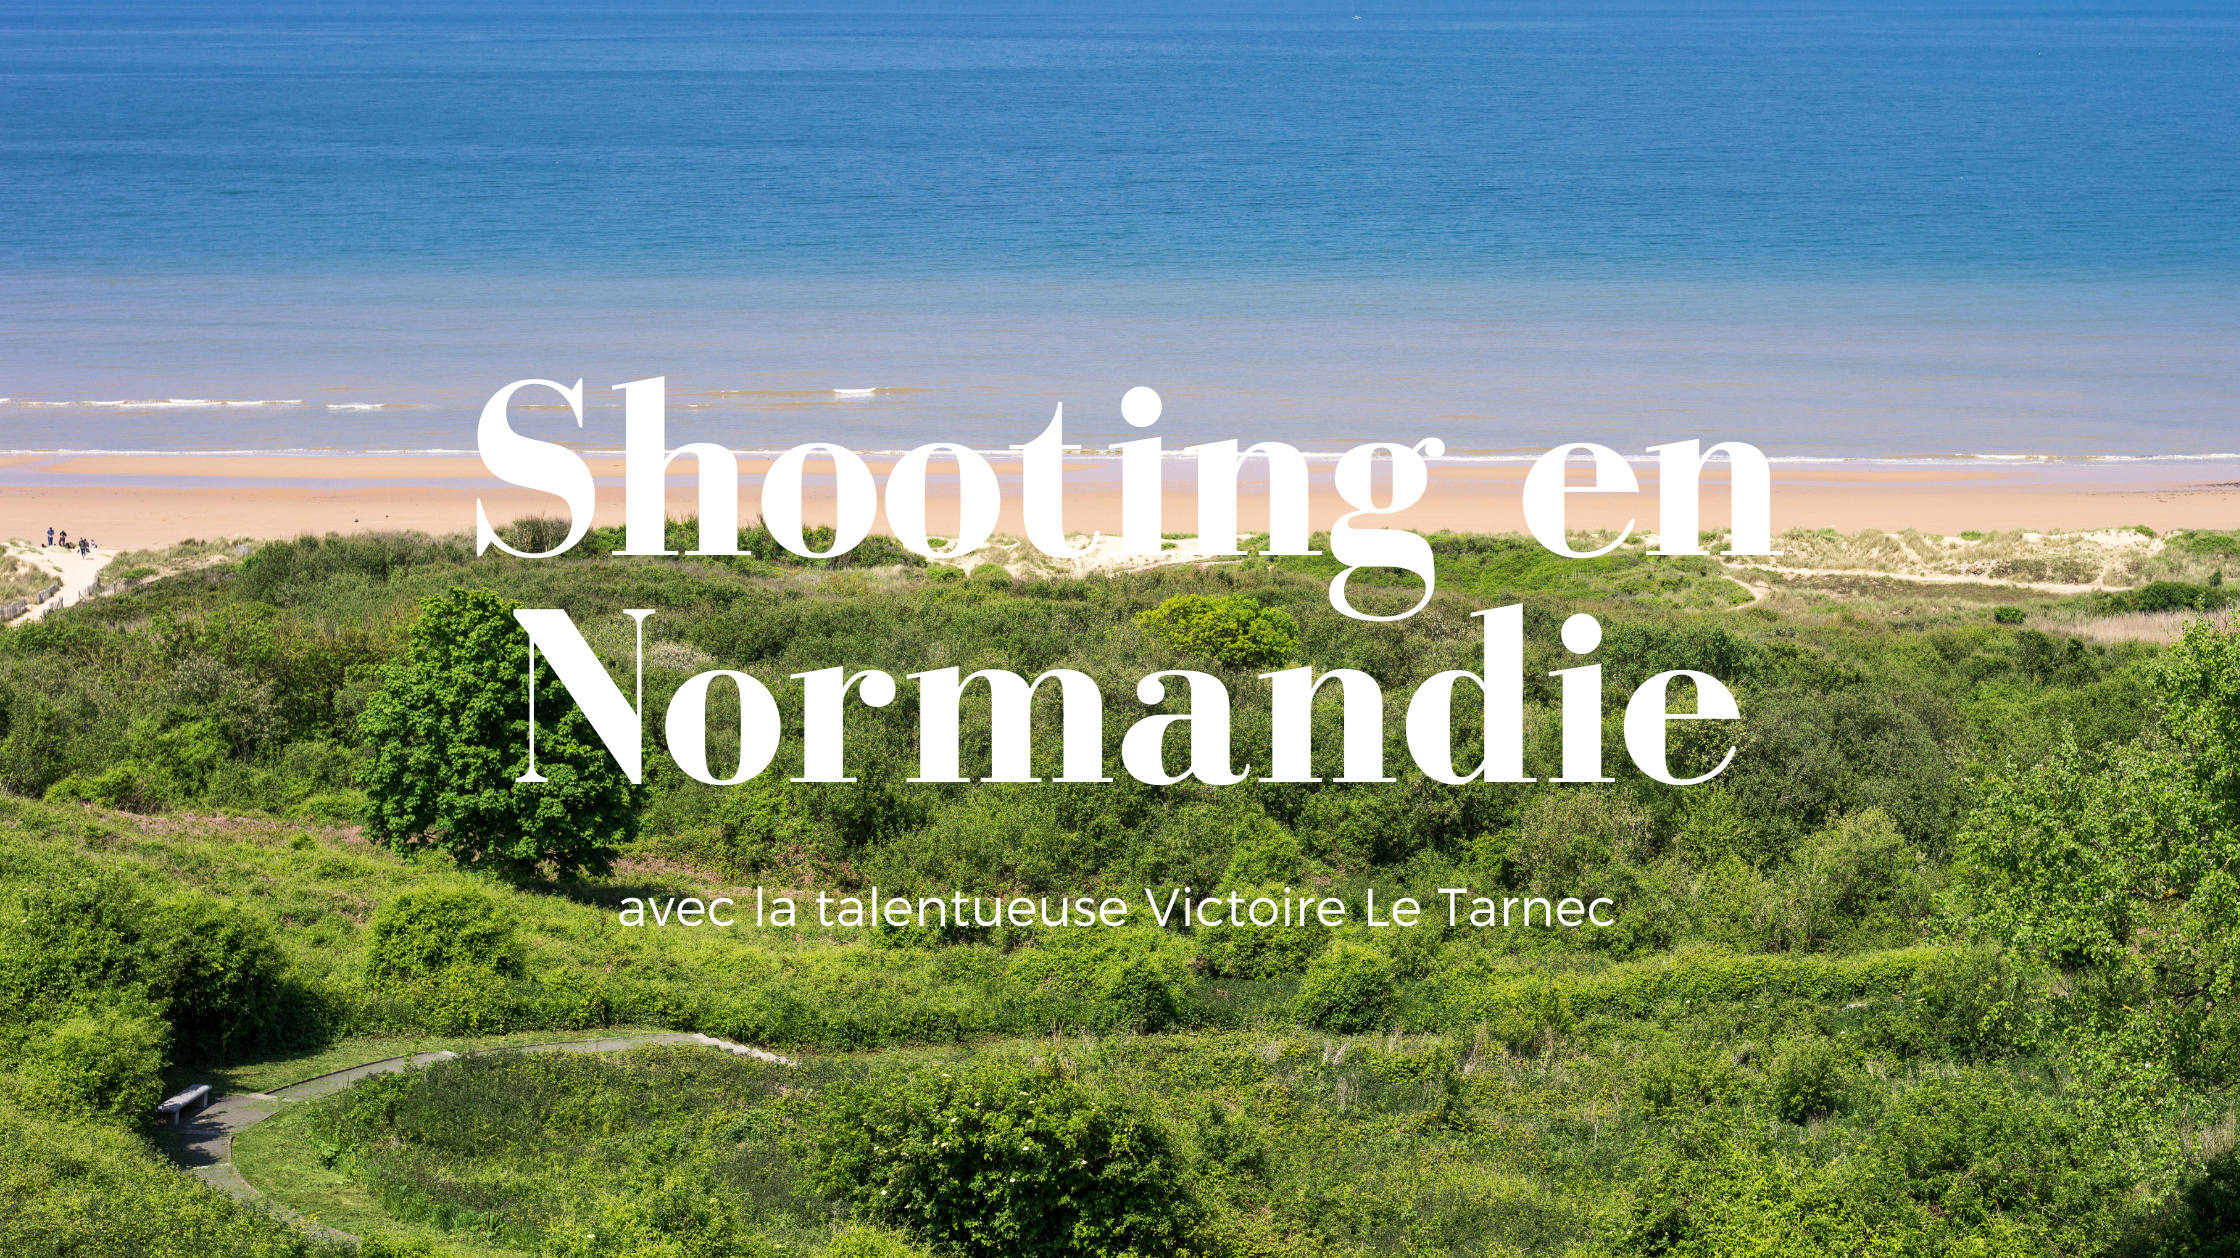 BEHIND THE SCENE / IVARENE, UN SHOOTING EN NORMANDIE